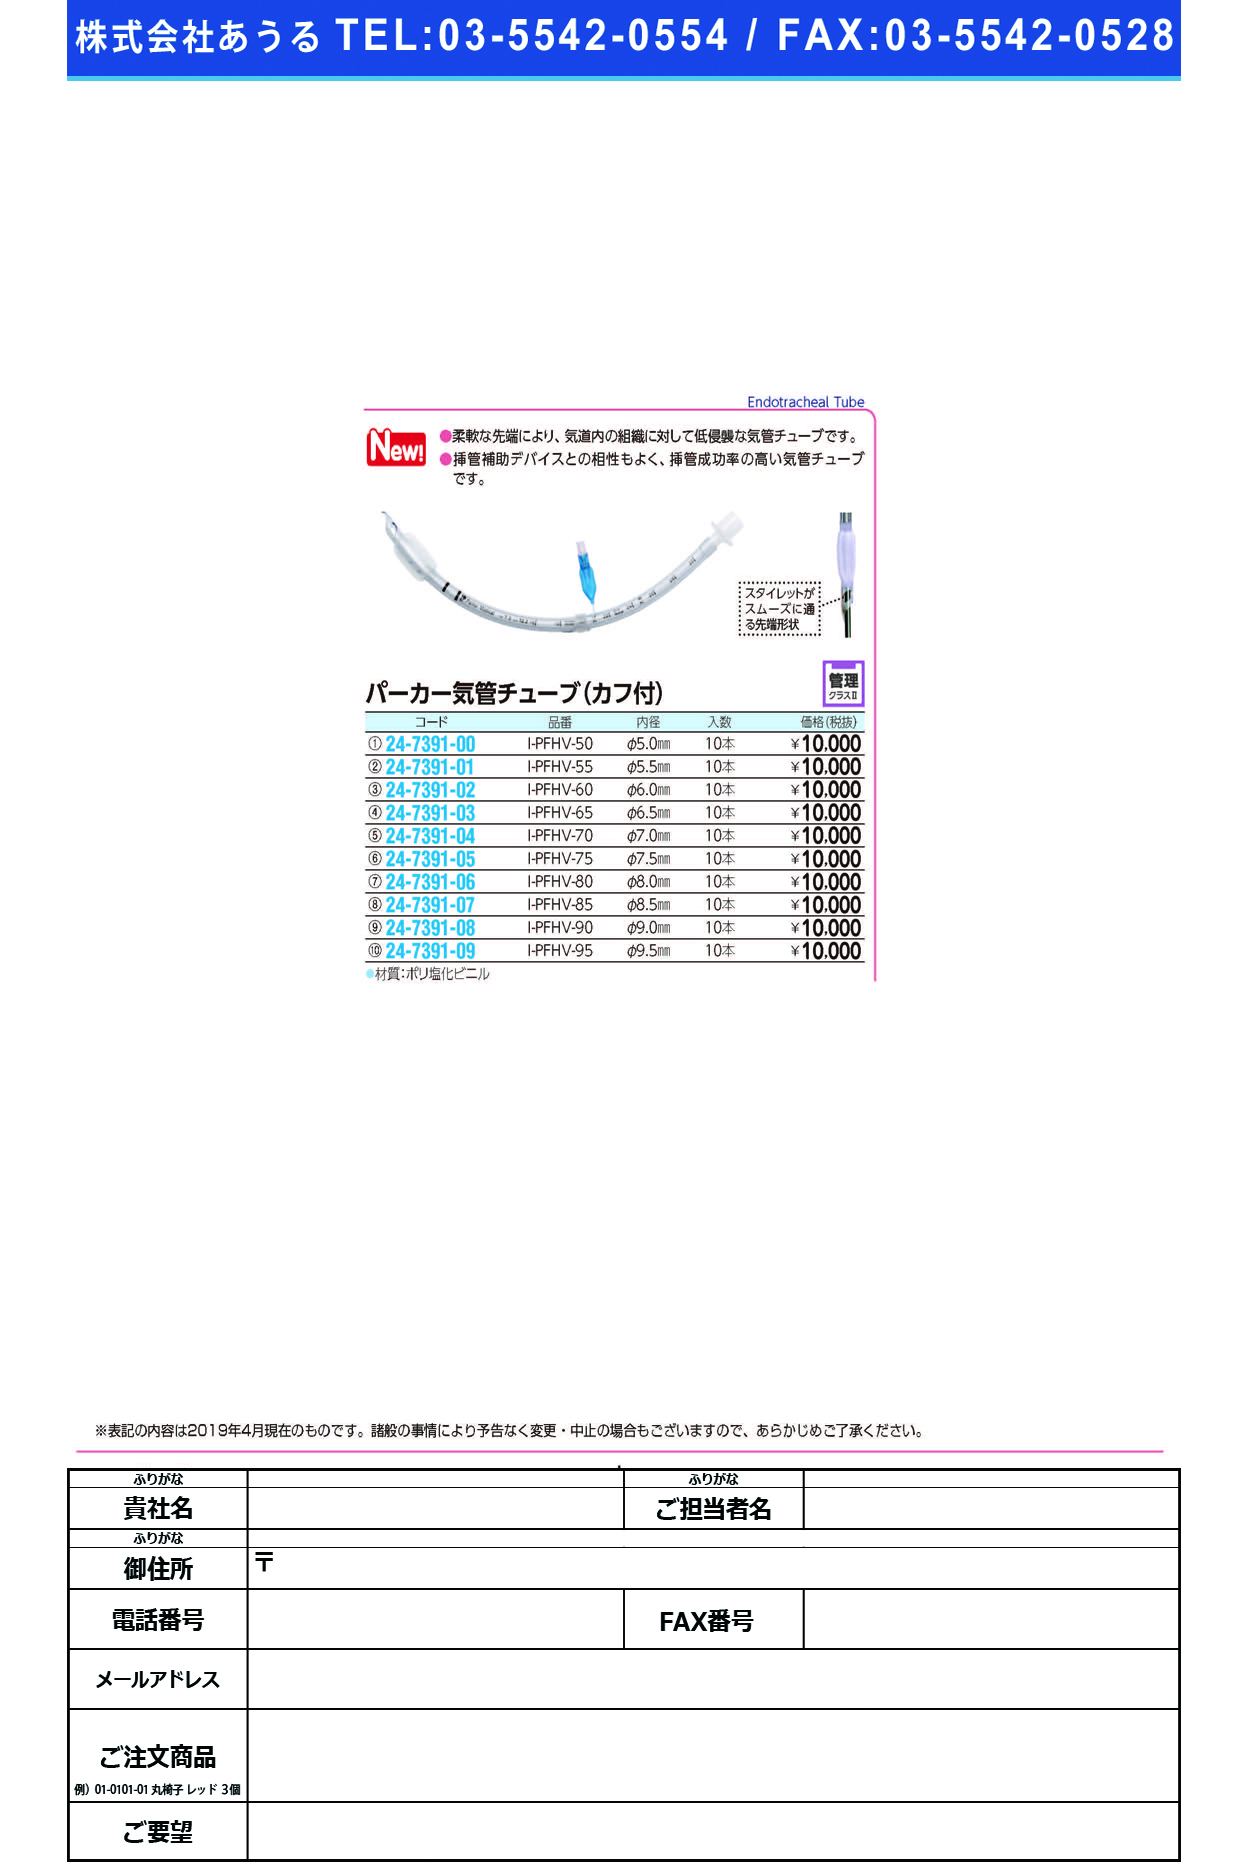 (24-7391-09)パーカー気管チューブI-PFHV-95(9.5MM)10ﾎﾝ ﾊﾟｰｶｰｷｶﾝﾁｭｰﾌﾞ(日本メディカルネクスト)【1箱単位】【2019年カタログ商品】